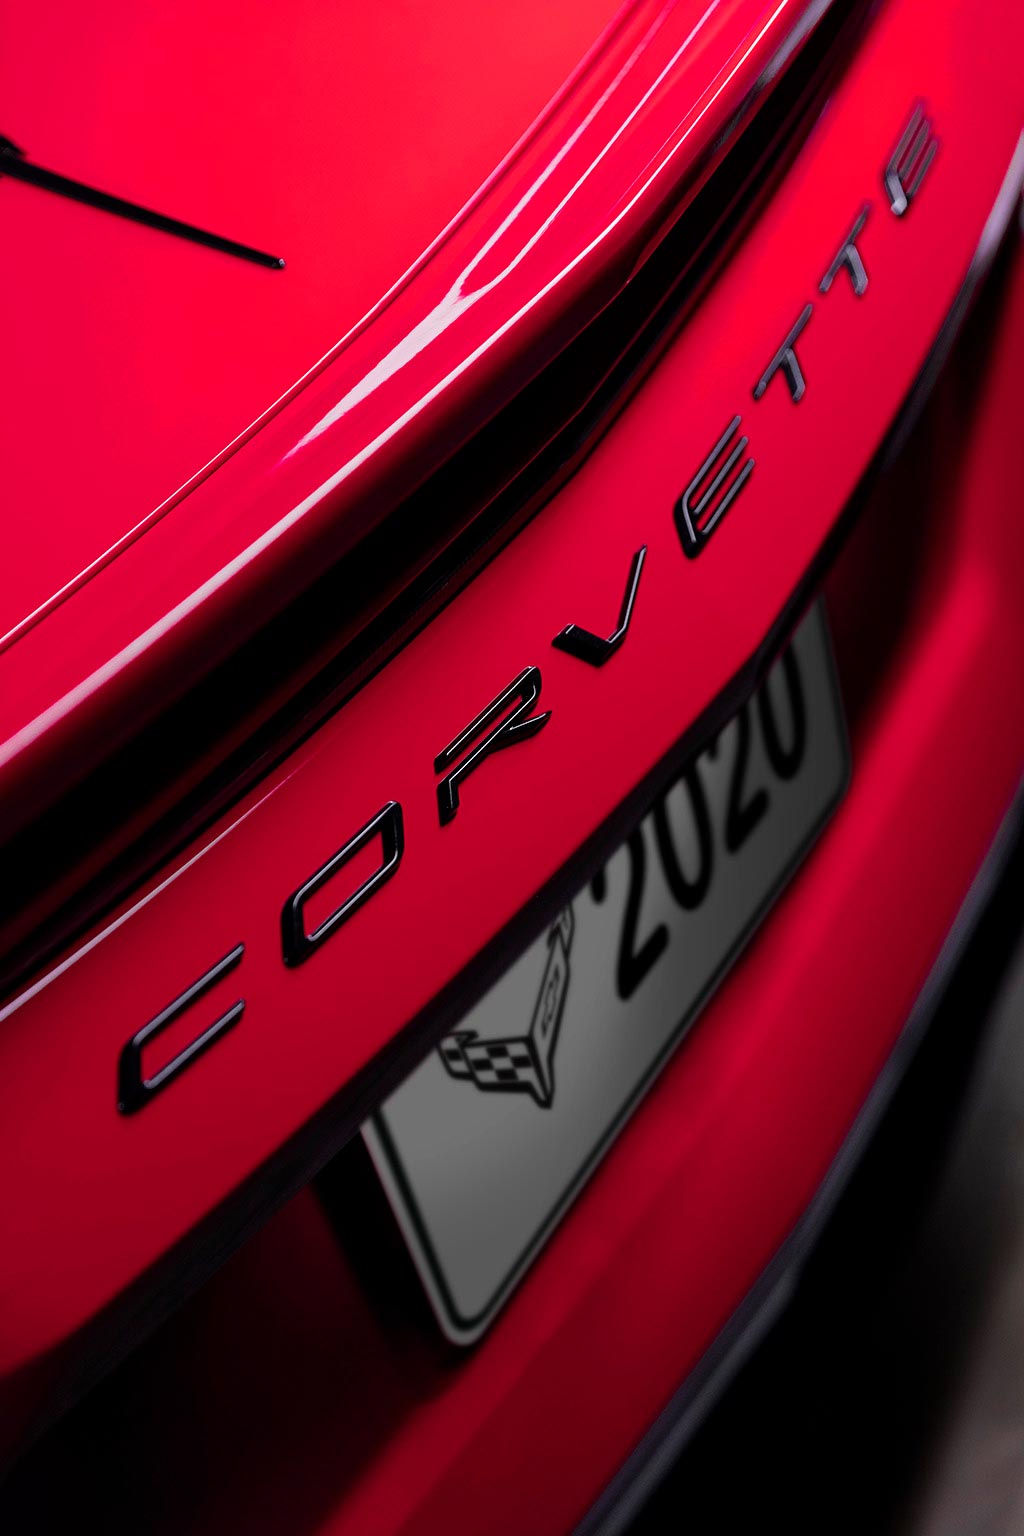 The 2020 Chevrolet Corvette